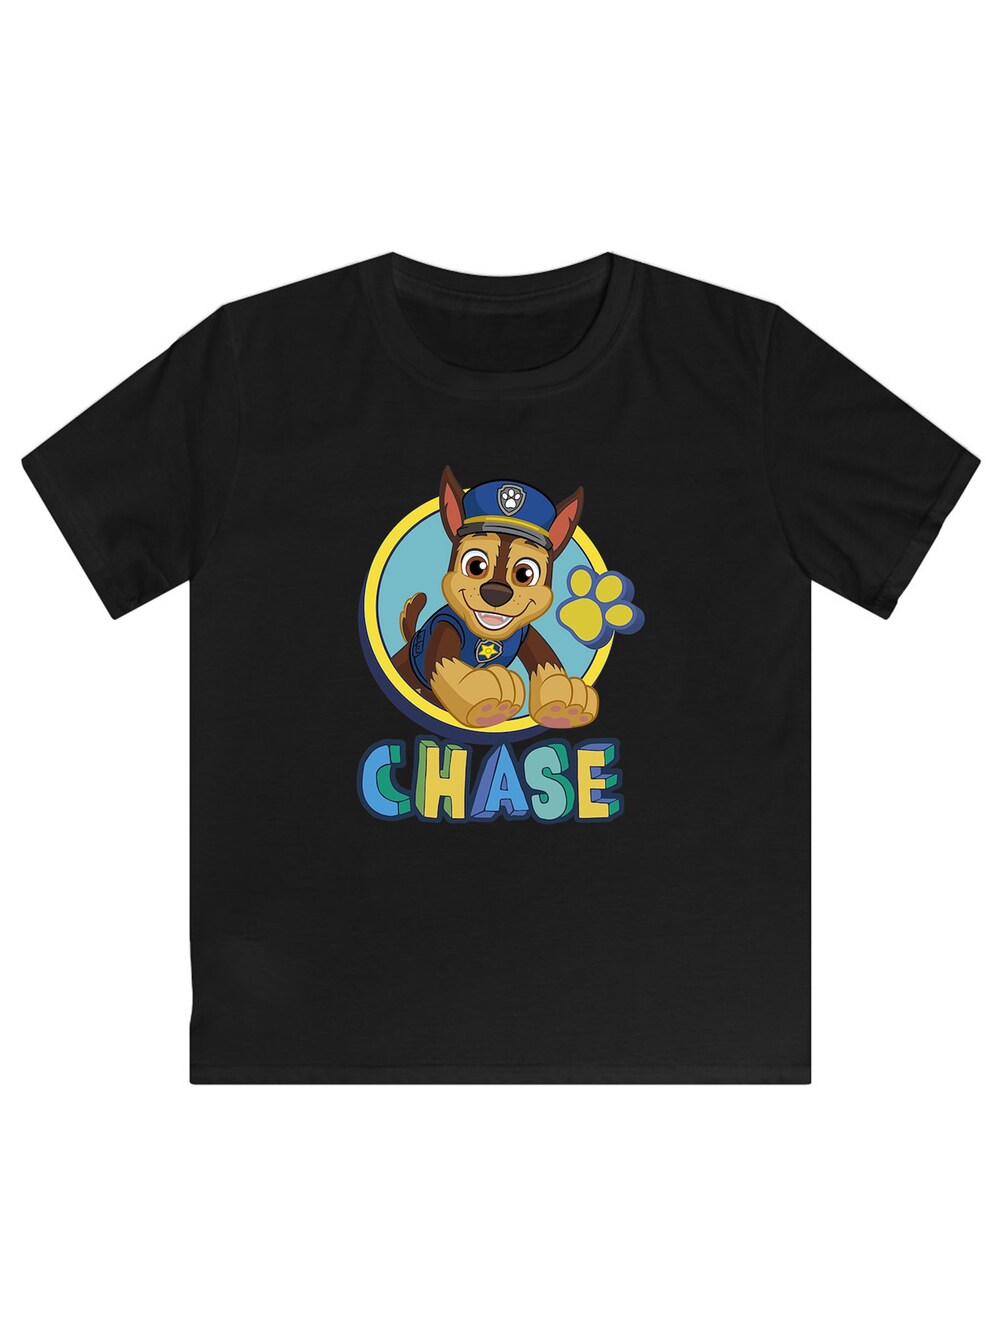 футболка chase размер м черный Футболка F4Nt4Stic Chase, черный